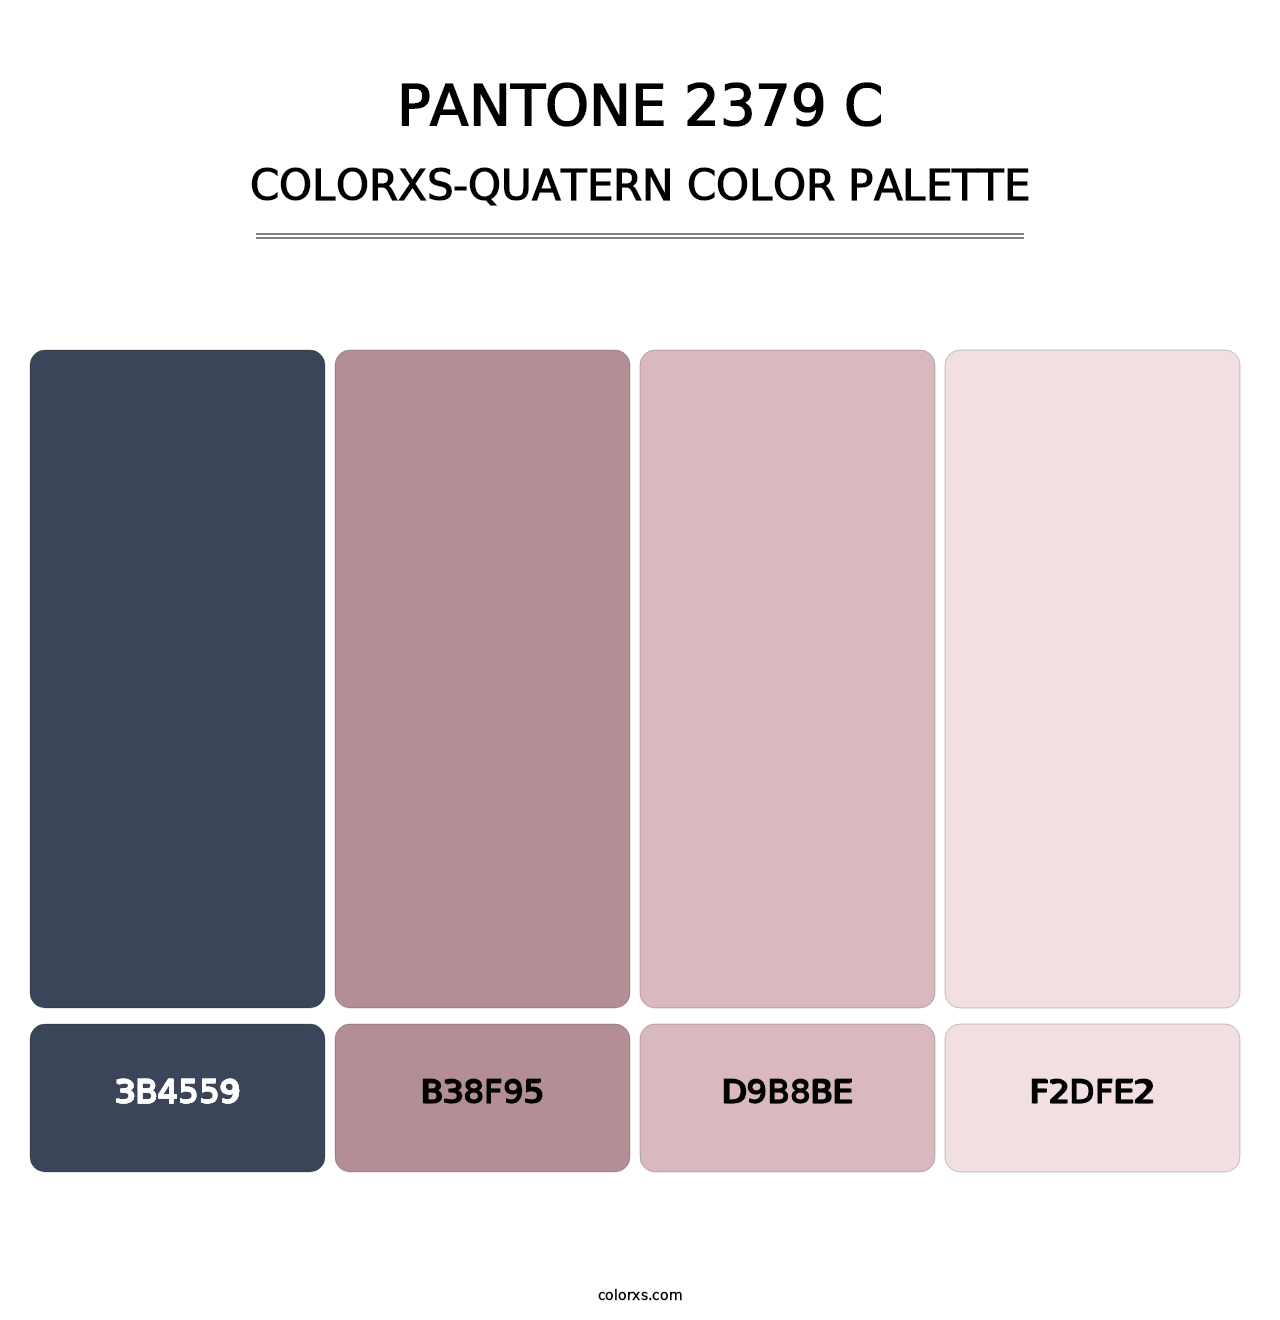 PANTONE 2379 C - Colorxs Quatern Palette